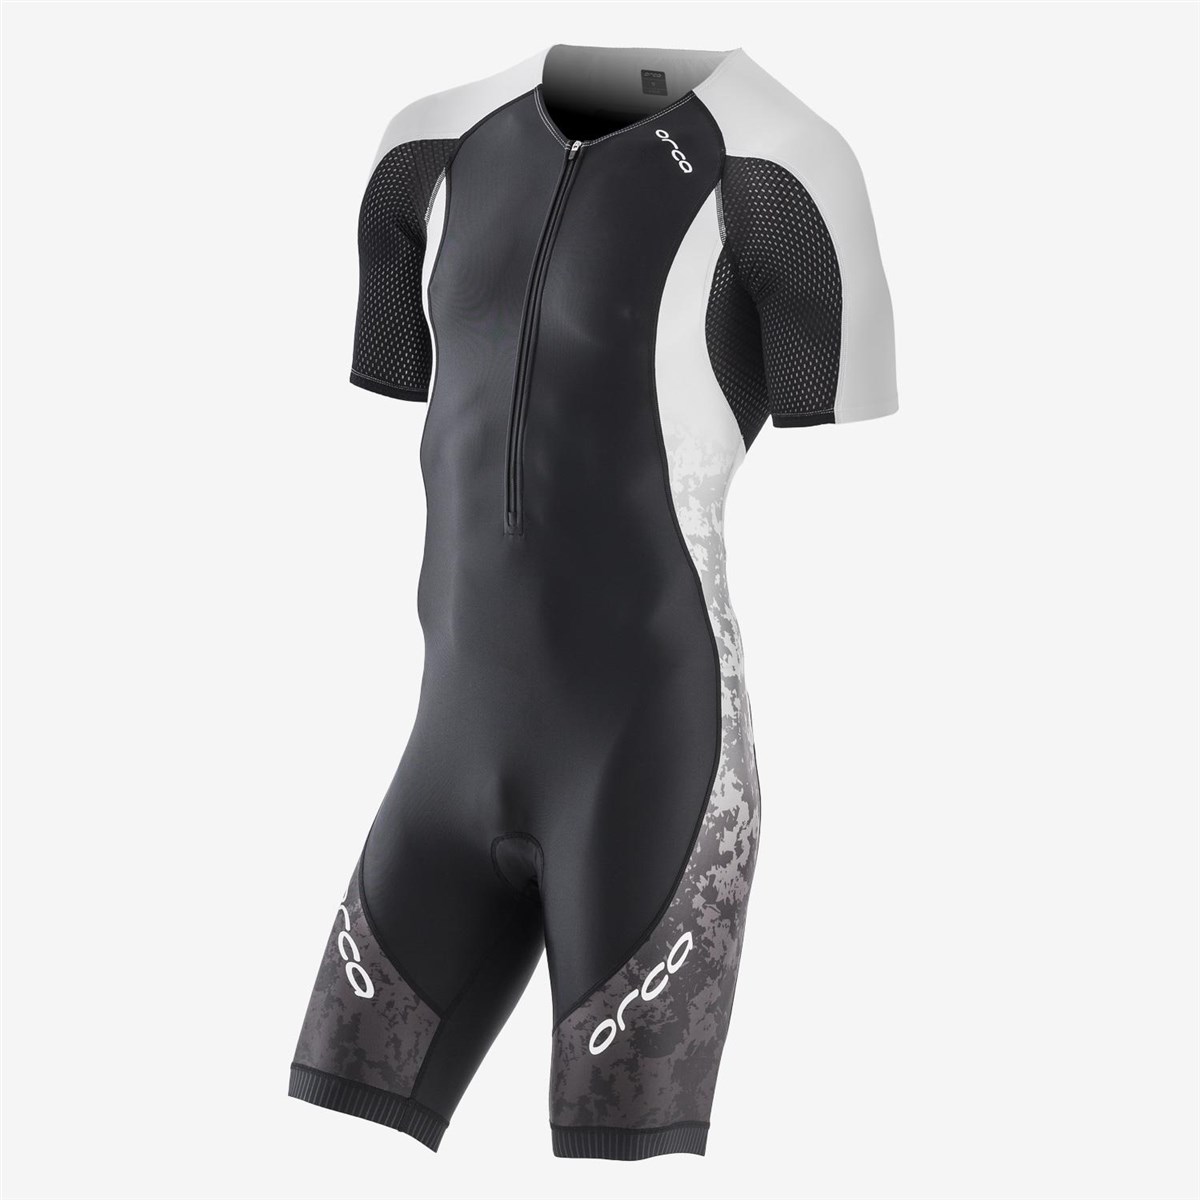 Orca Core Short Sleeve Triathlon Race Suit product image